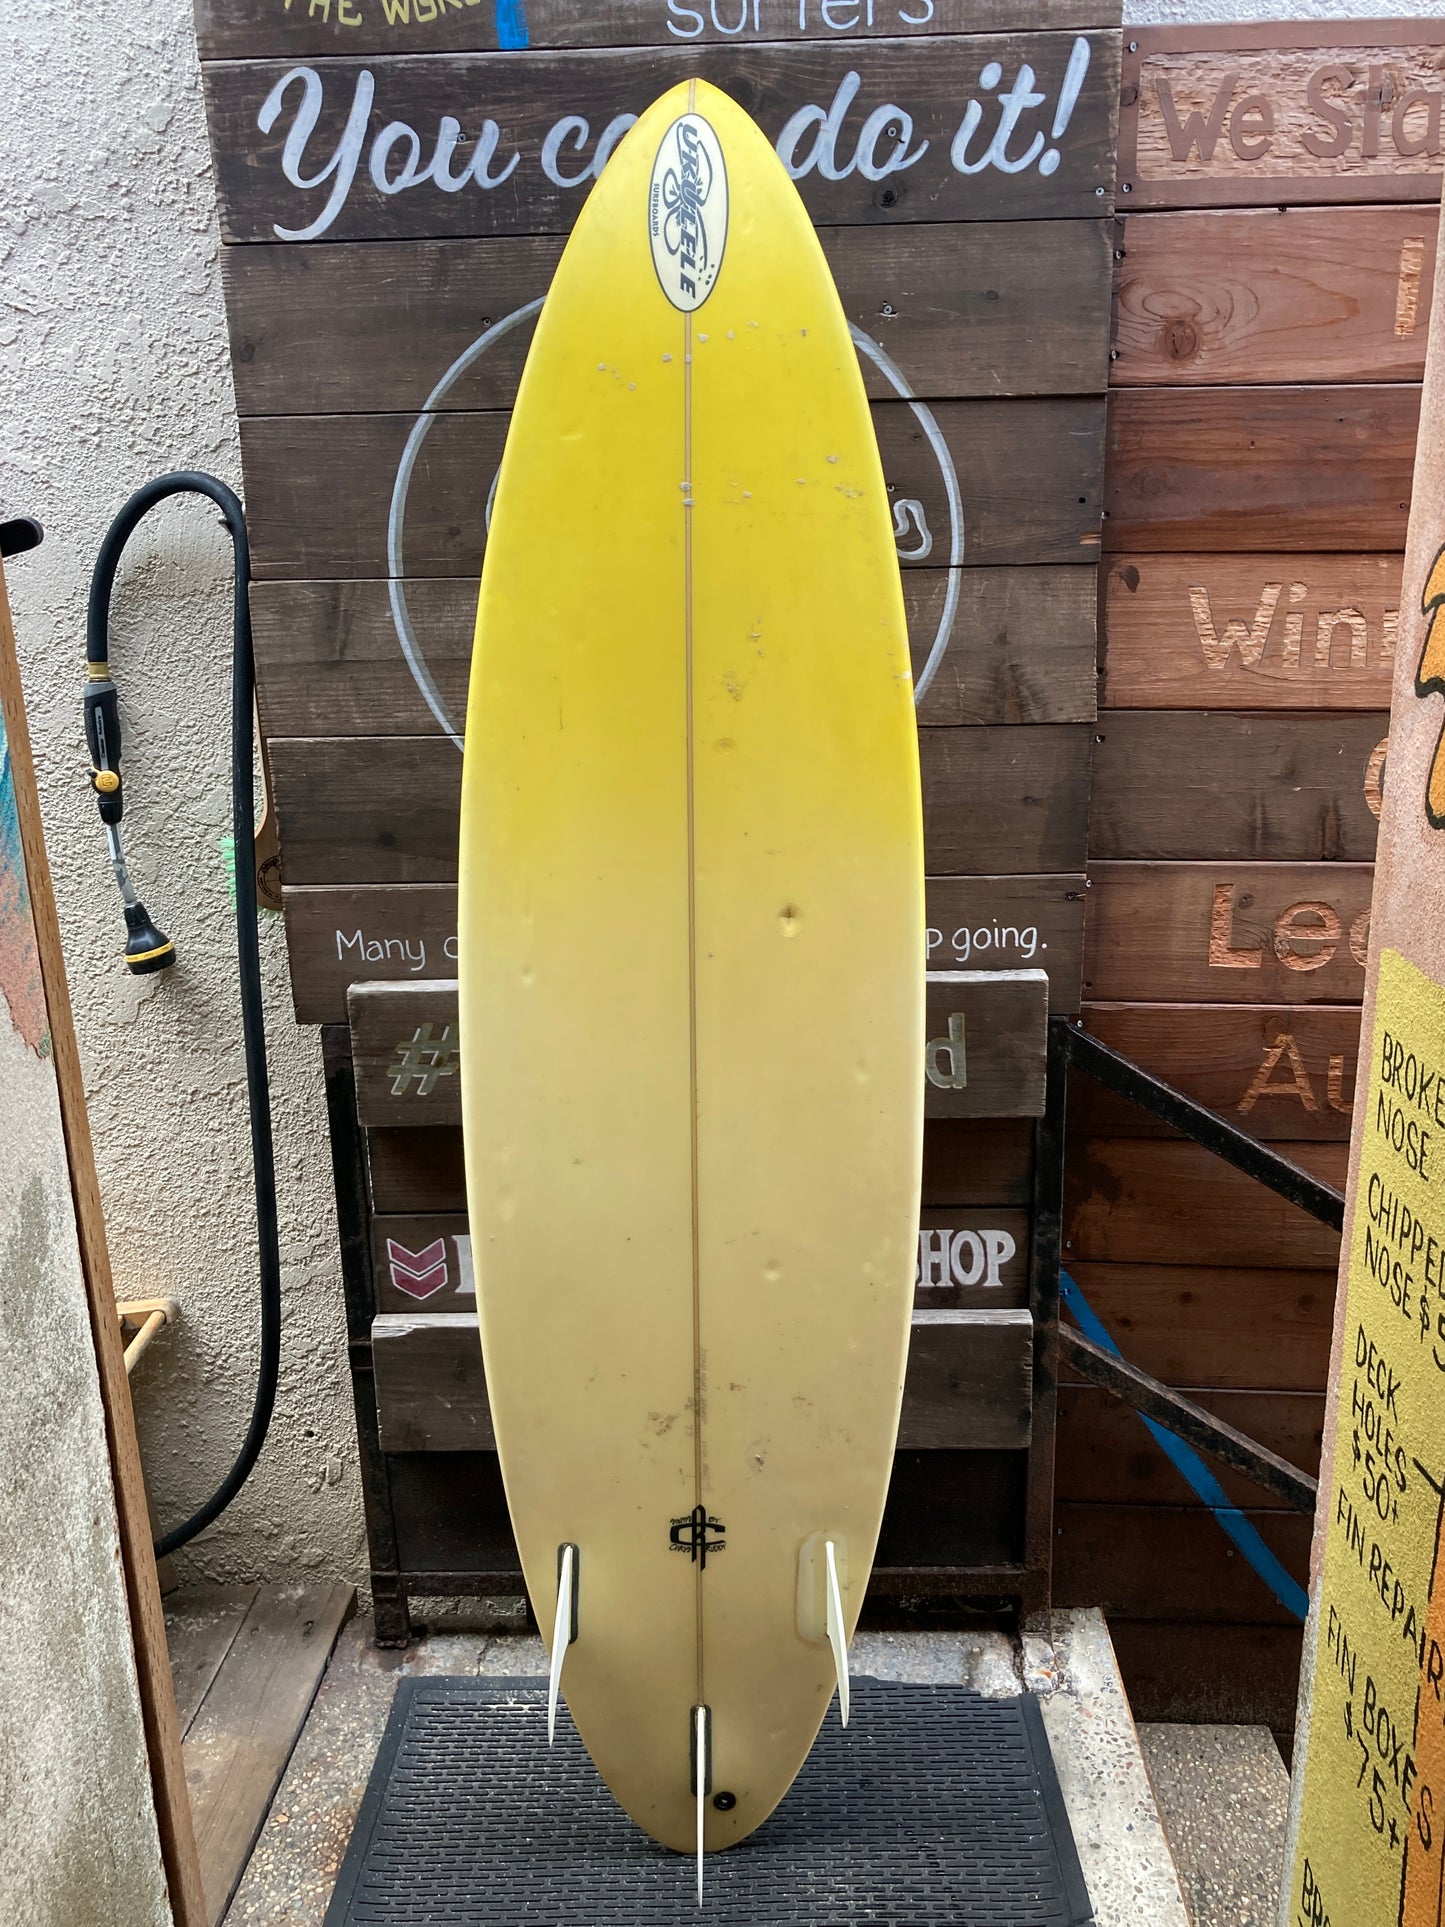 USED: Ukulele Yellow Surfboard